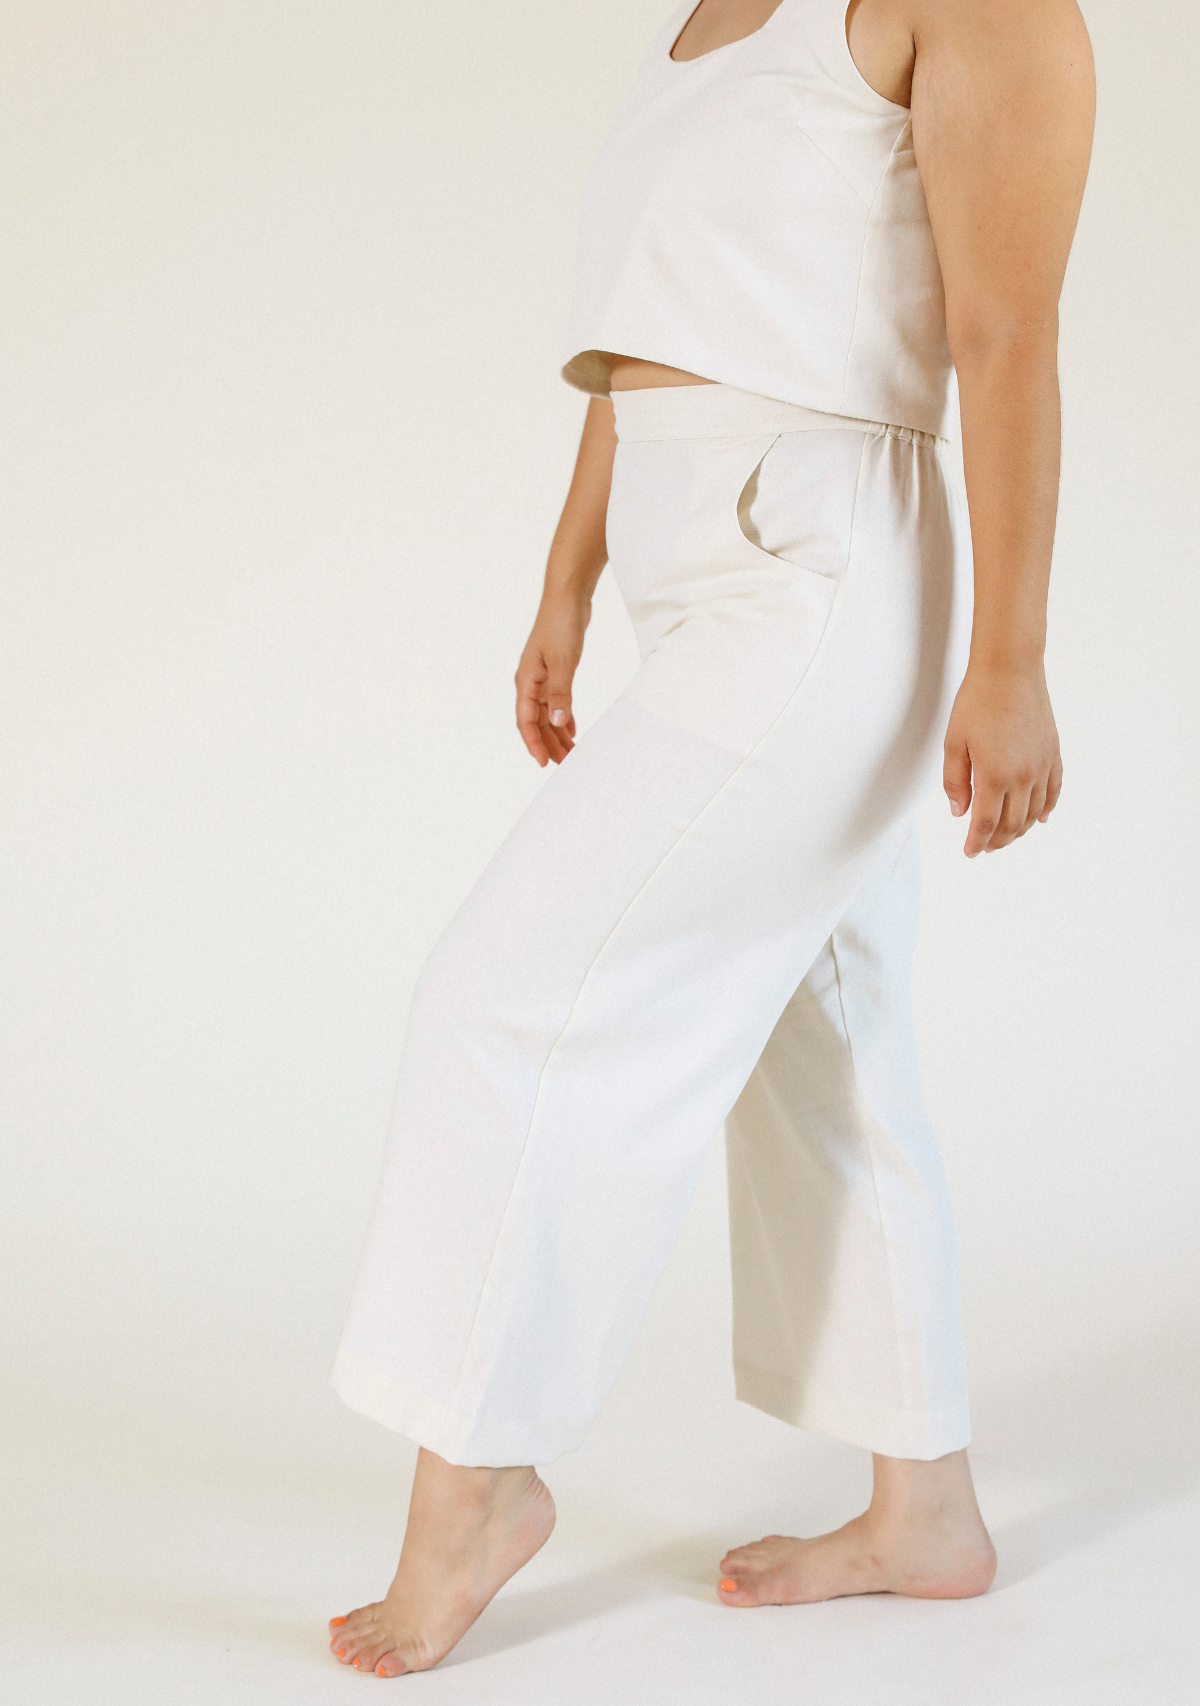 women's linen pant size XS-3X size inclusive color ivory